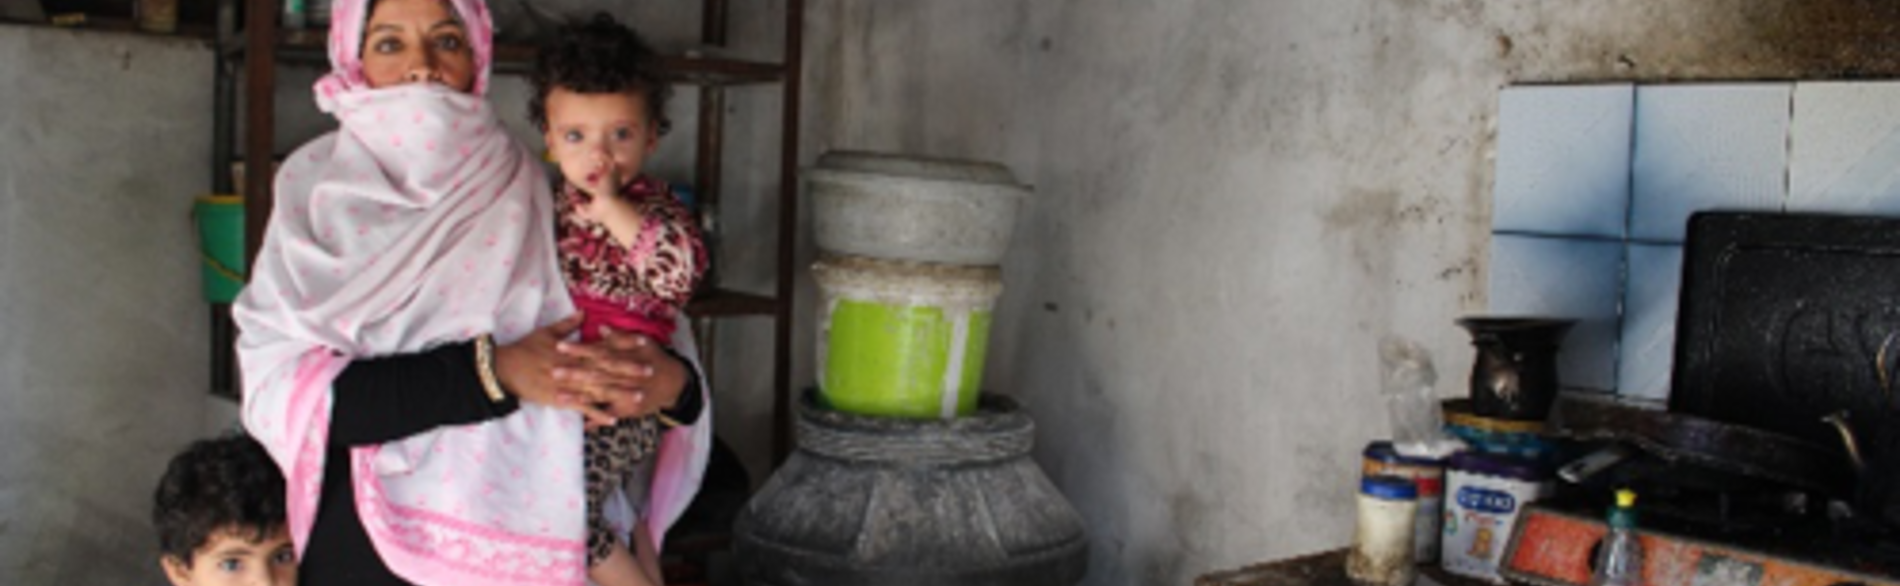 מונא ושניים משבעת ילדיה, במשק בית עני שנפגע מהמחסור בחשמל ובמים. רפיח, רצועת עזה, אוקטובר 2017. © צילום: OXFAM